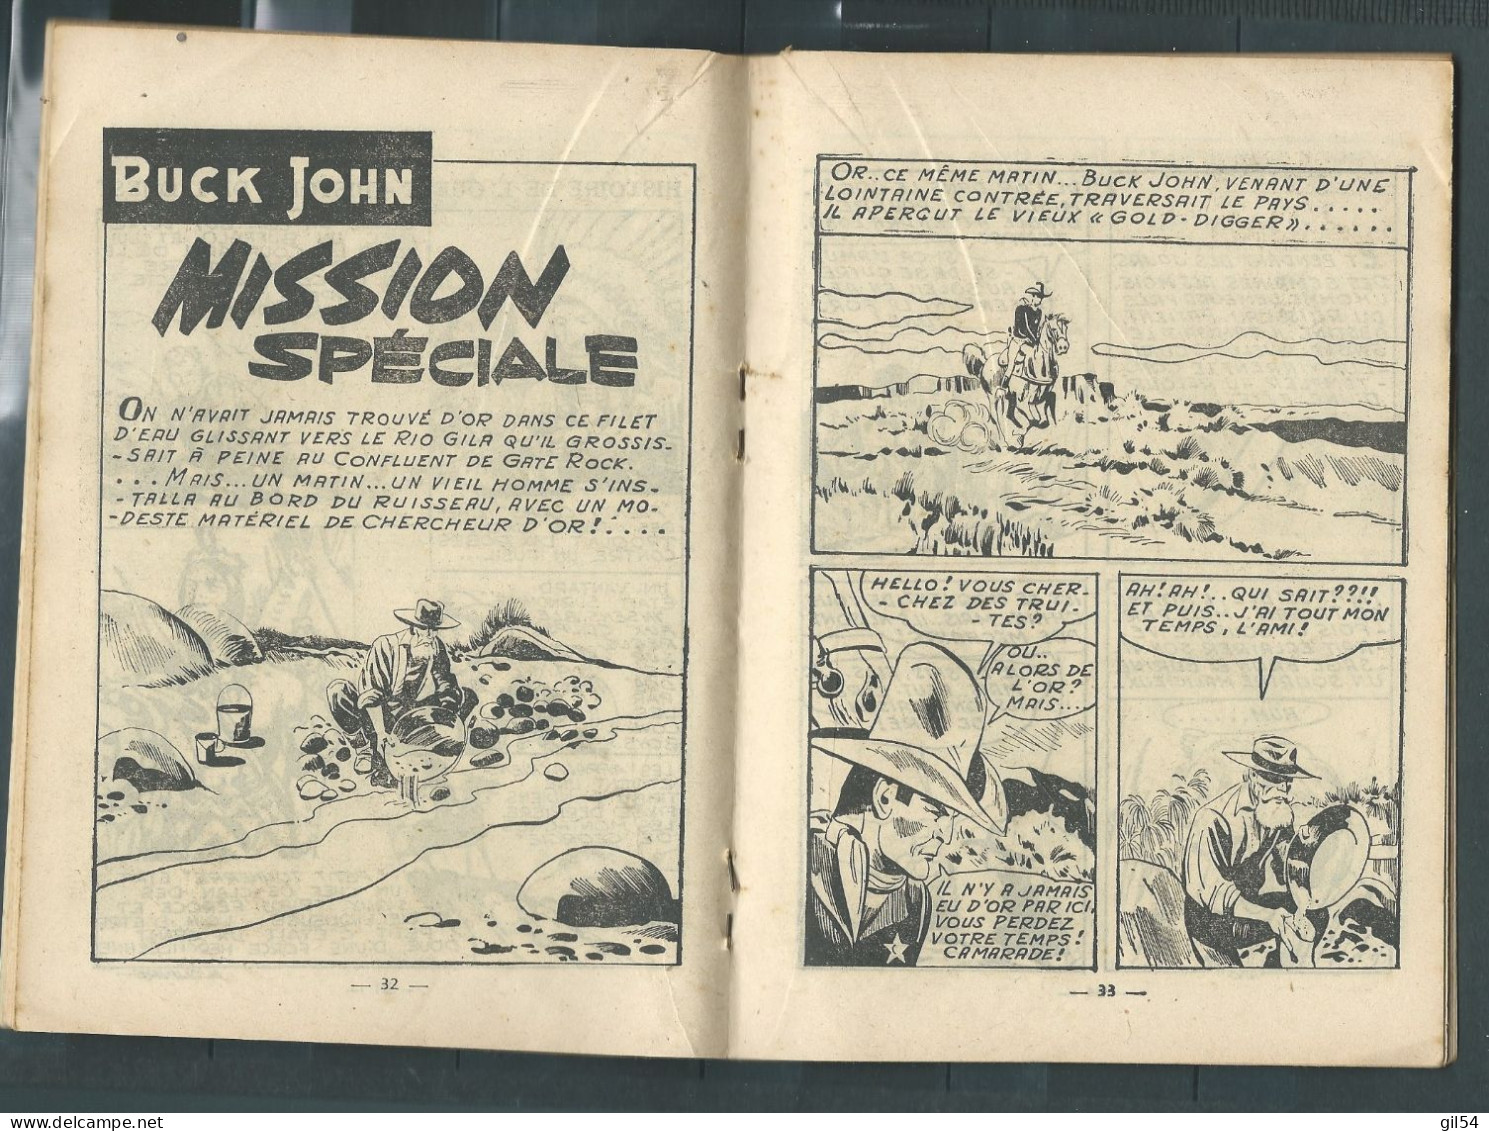 Bd " Buck John   " Bimensuel N° 177  "   Convoi Stoppé à Indiaskeepee     , DL  N° 40  1954 - BE-   BUC 1002 - Piccoli Formati